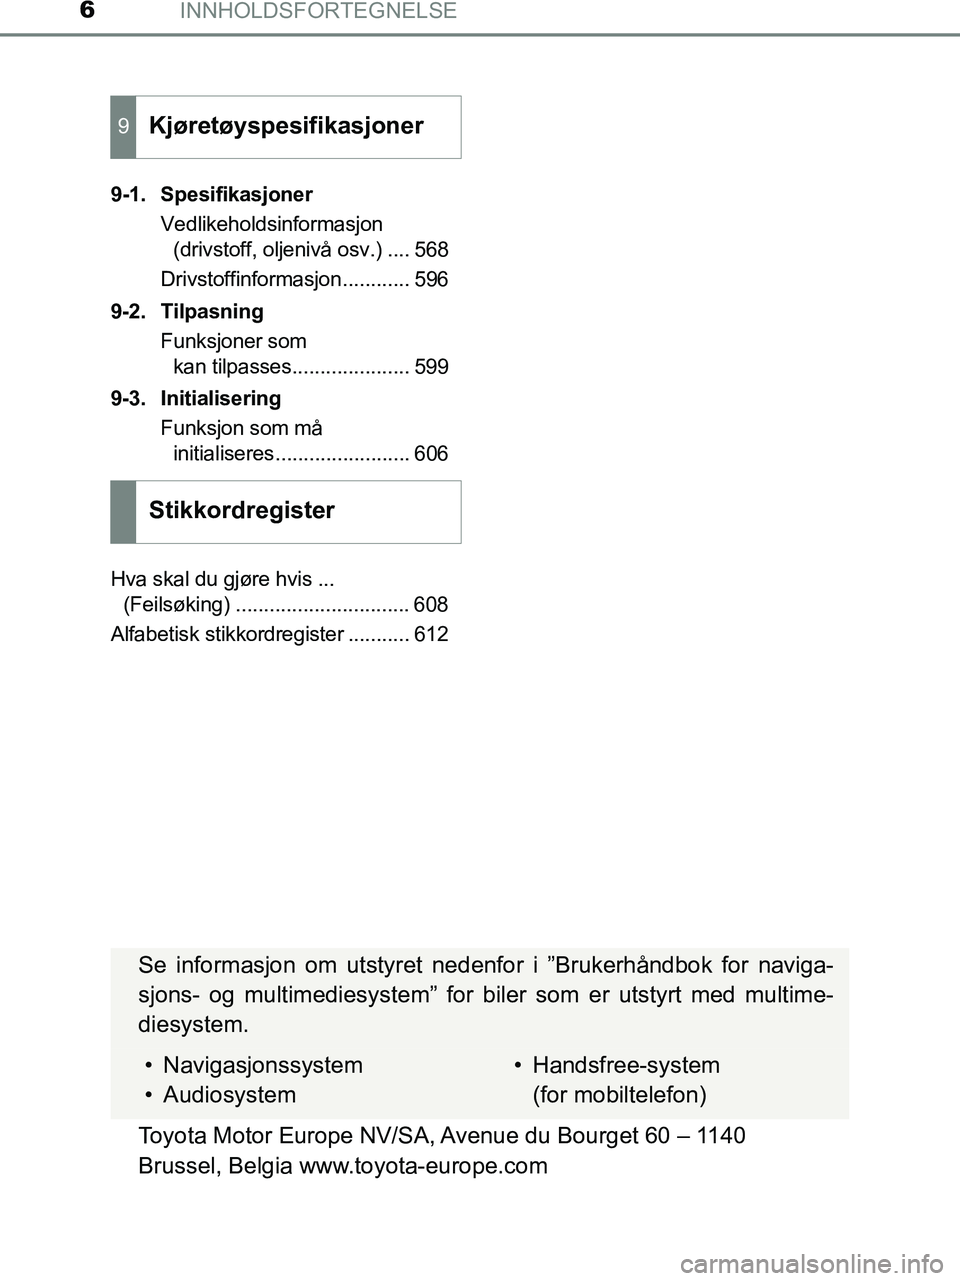 TOYOTA HILUX 2019  Instruksjoner for bruk (in Norwegian) INNHOLDSFORTEGNELSE6
HILUX_OM_OM0K375NO_(EE)9-1. Spesifikasjoner
Vedlikeholdsinformasjon (drivstoff, oljenivå osv.) .... 568
Drivstoffinformasjon............ 596
9-2. Tilpasning Funksjoner som kan ti